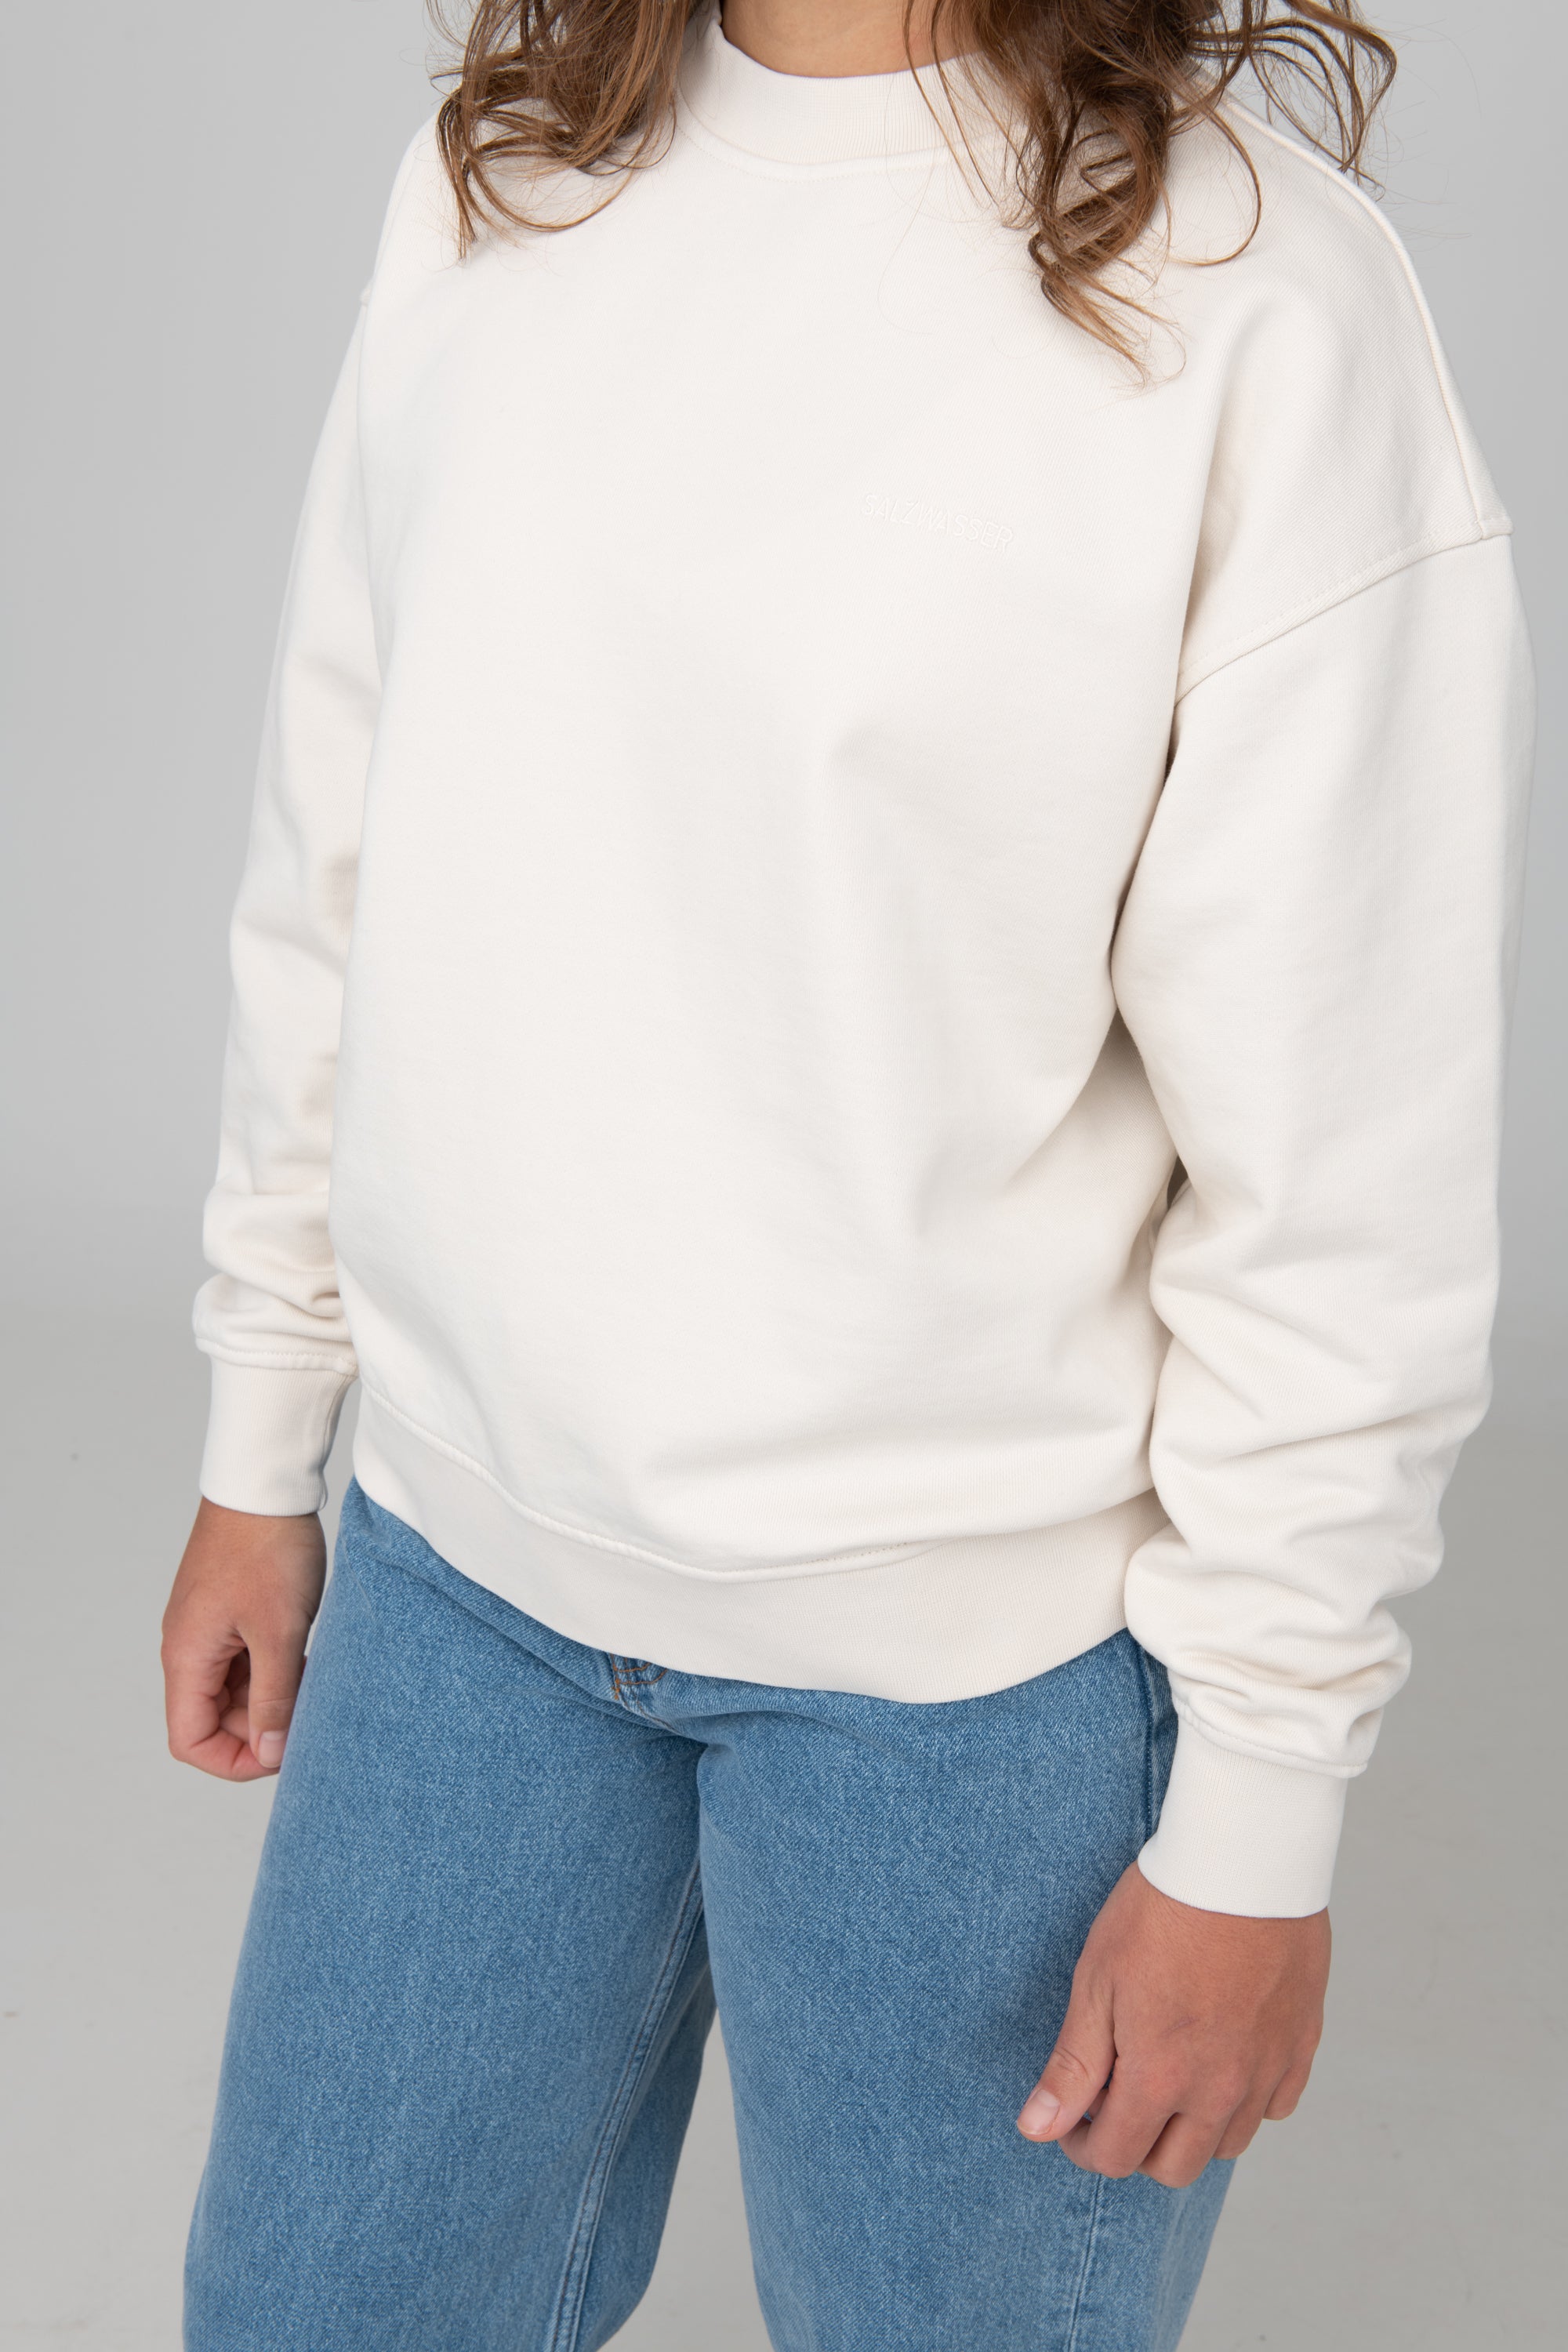 schlichter Sweater in Off-White mit weißer SALZWASSER-Stickerei